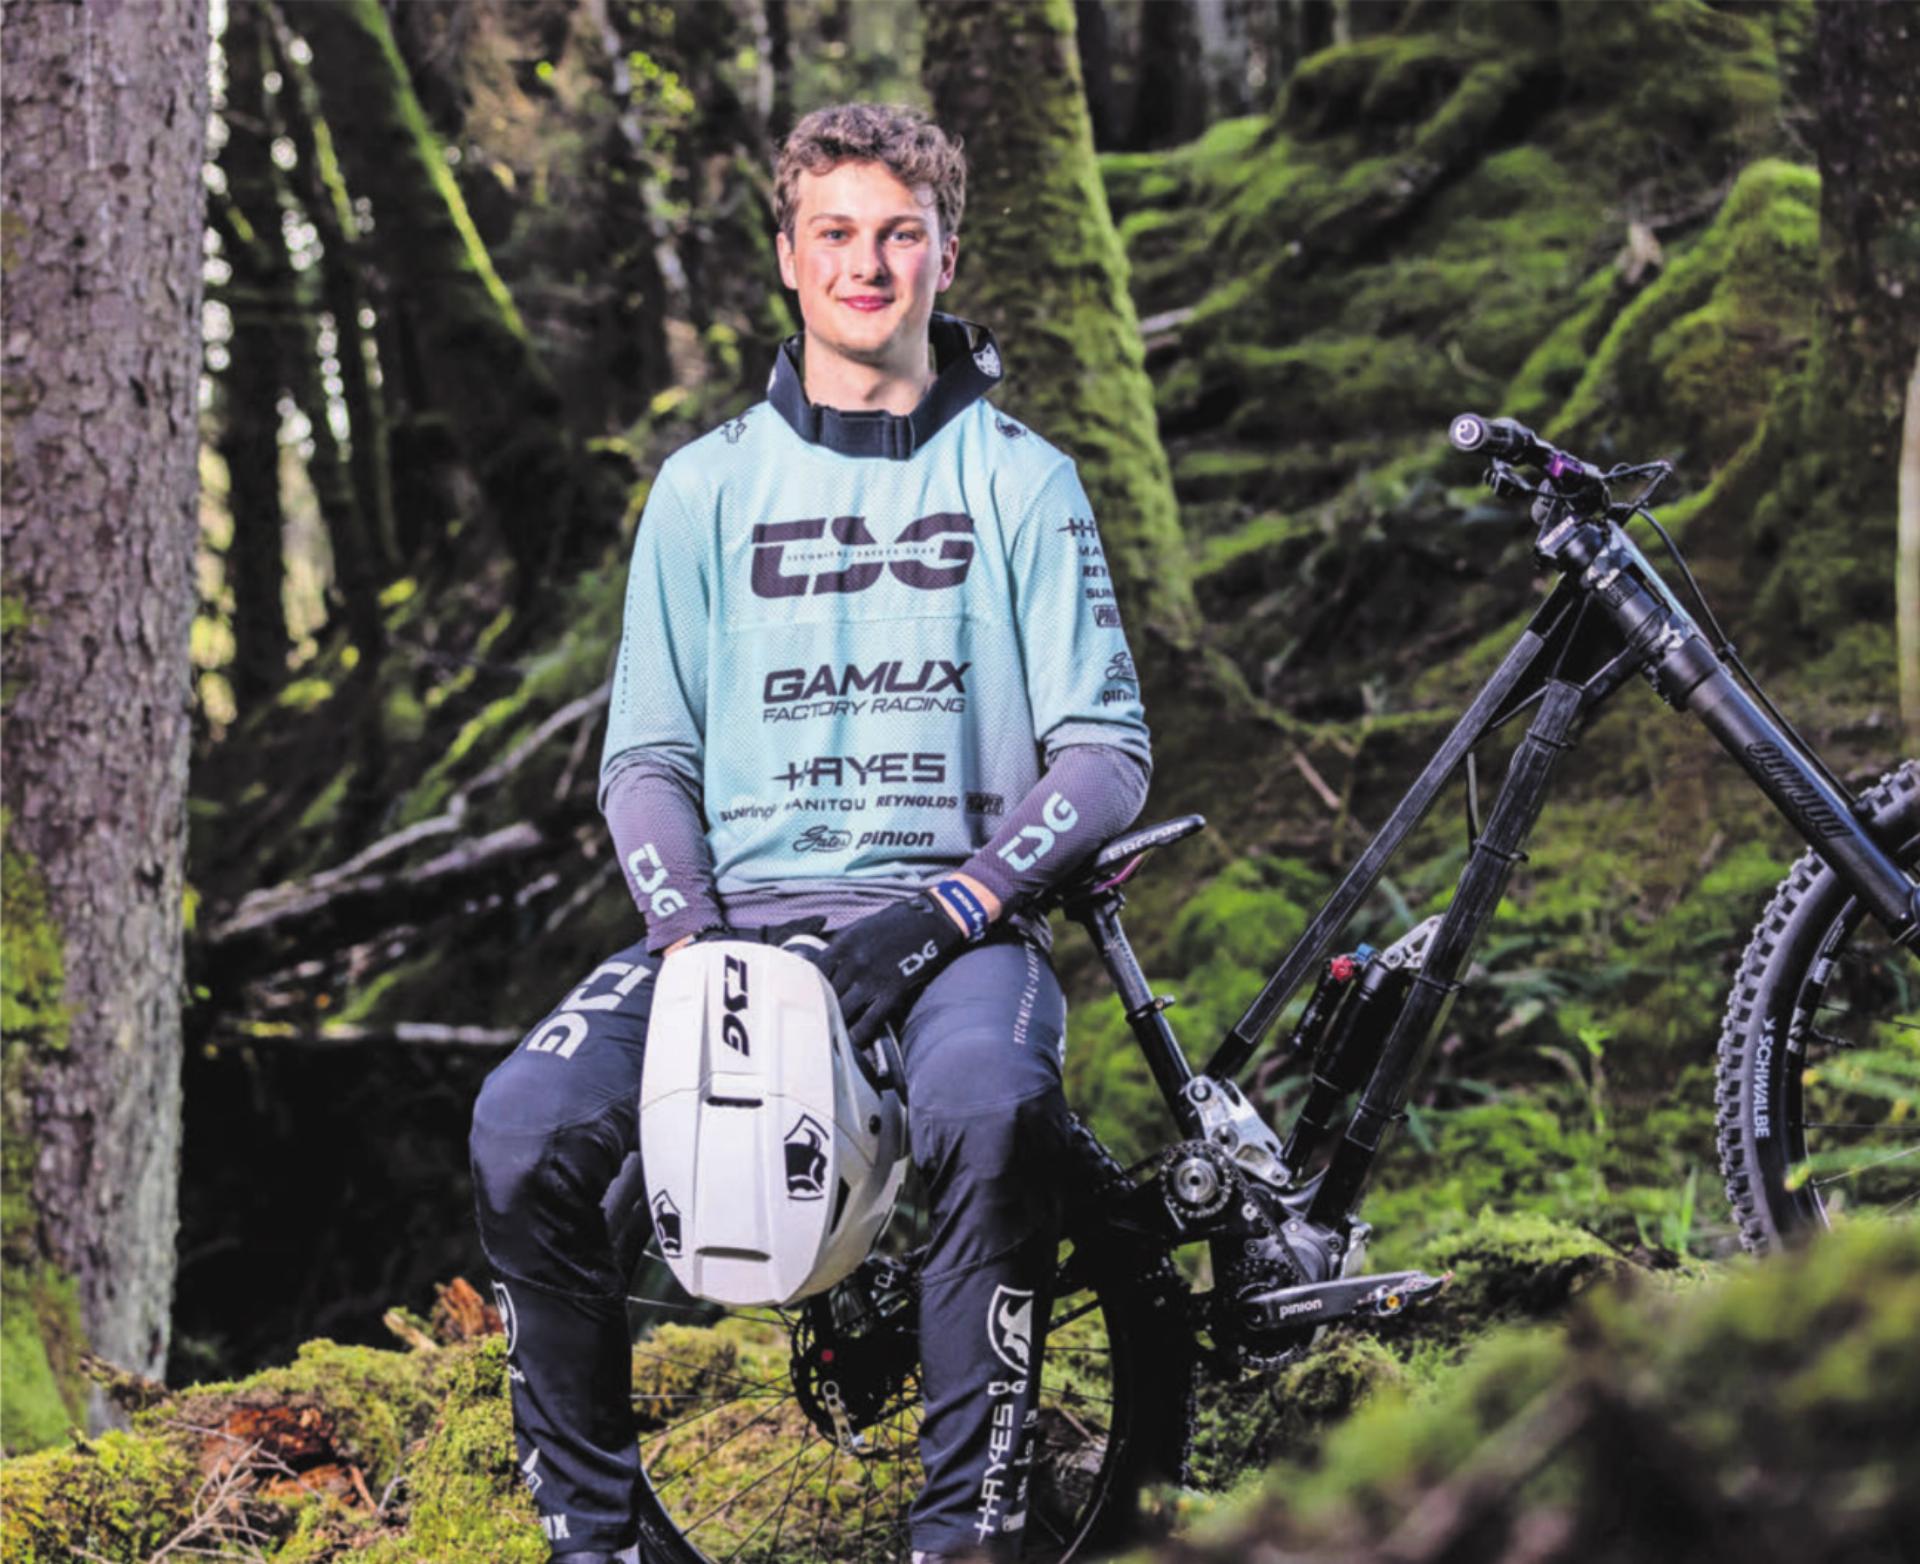 Mit seinem Bike draussen im Gelände ist er komplett in seinem Element: der Radsportler Mike Huter. Bild: Sebastian Sternemann